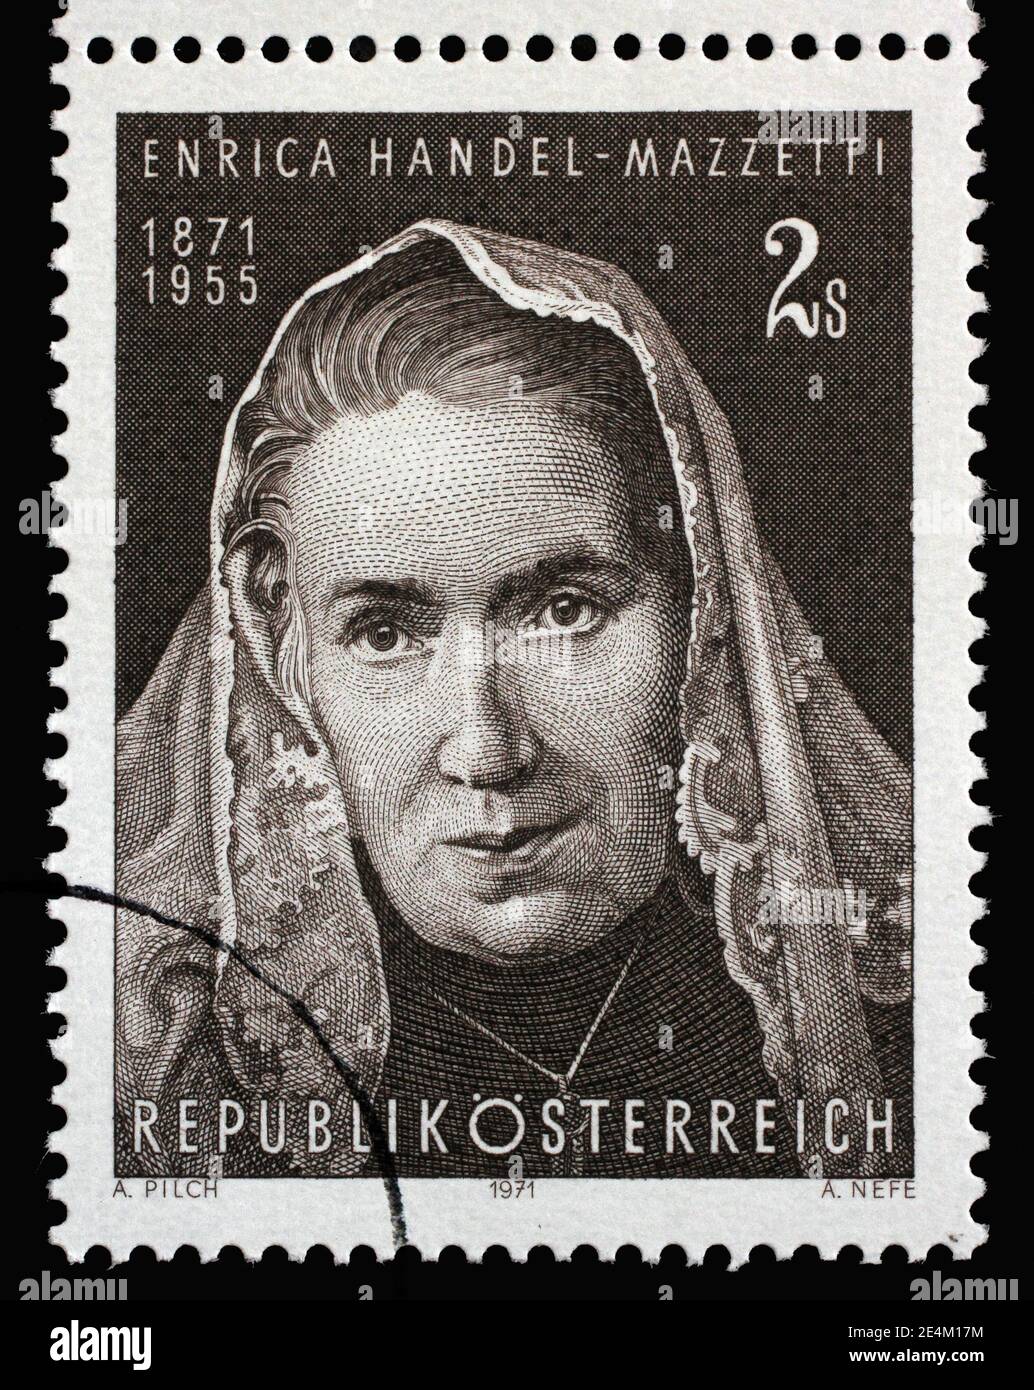 Le timbre imprimé en Autriche montre Enrica von Handel-Mazzetti(1871-1955), poète et écrivain autrichien connu pour ses romans historiques, vers 1971. Banque D'Images